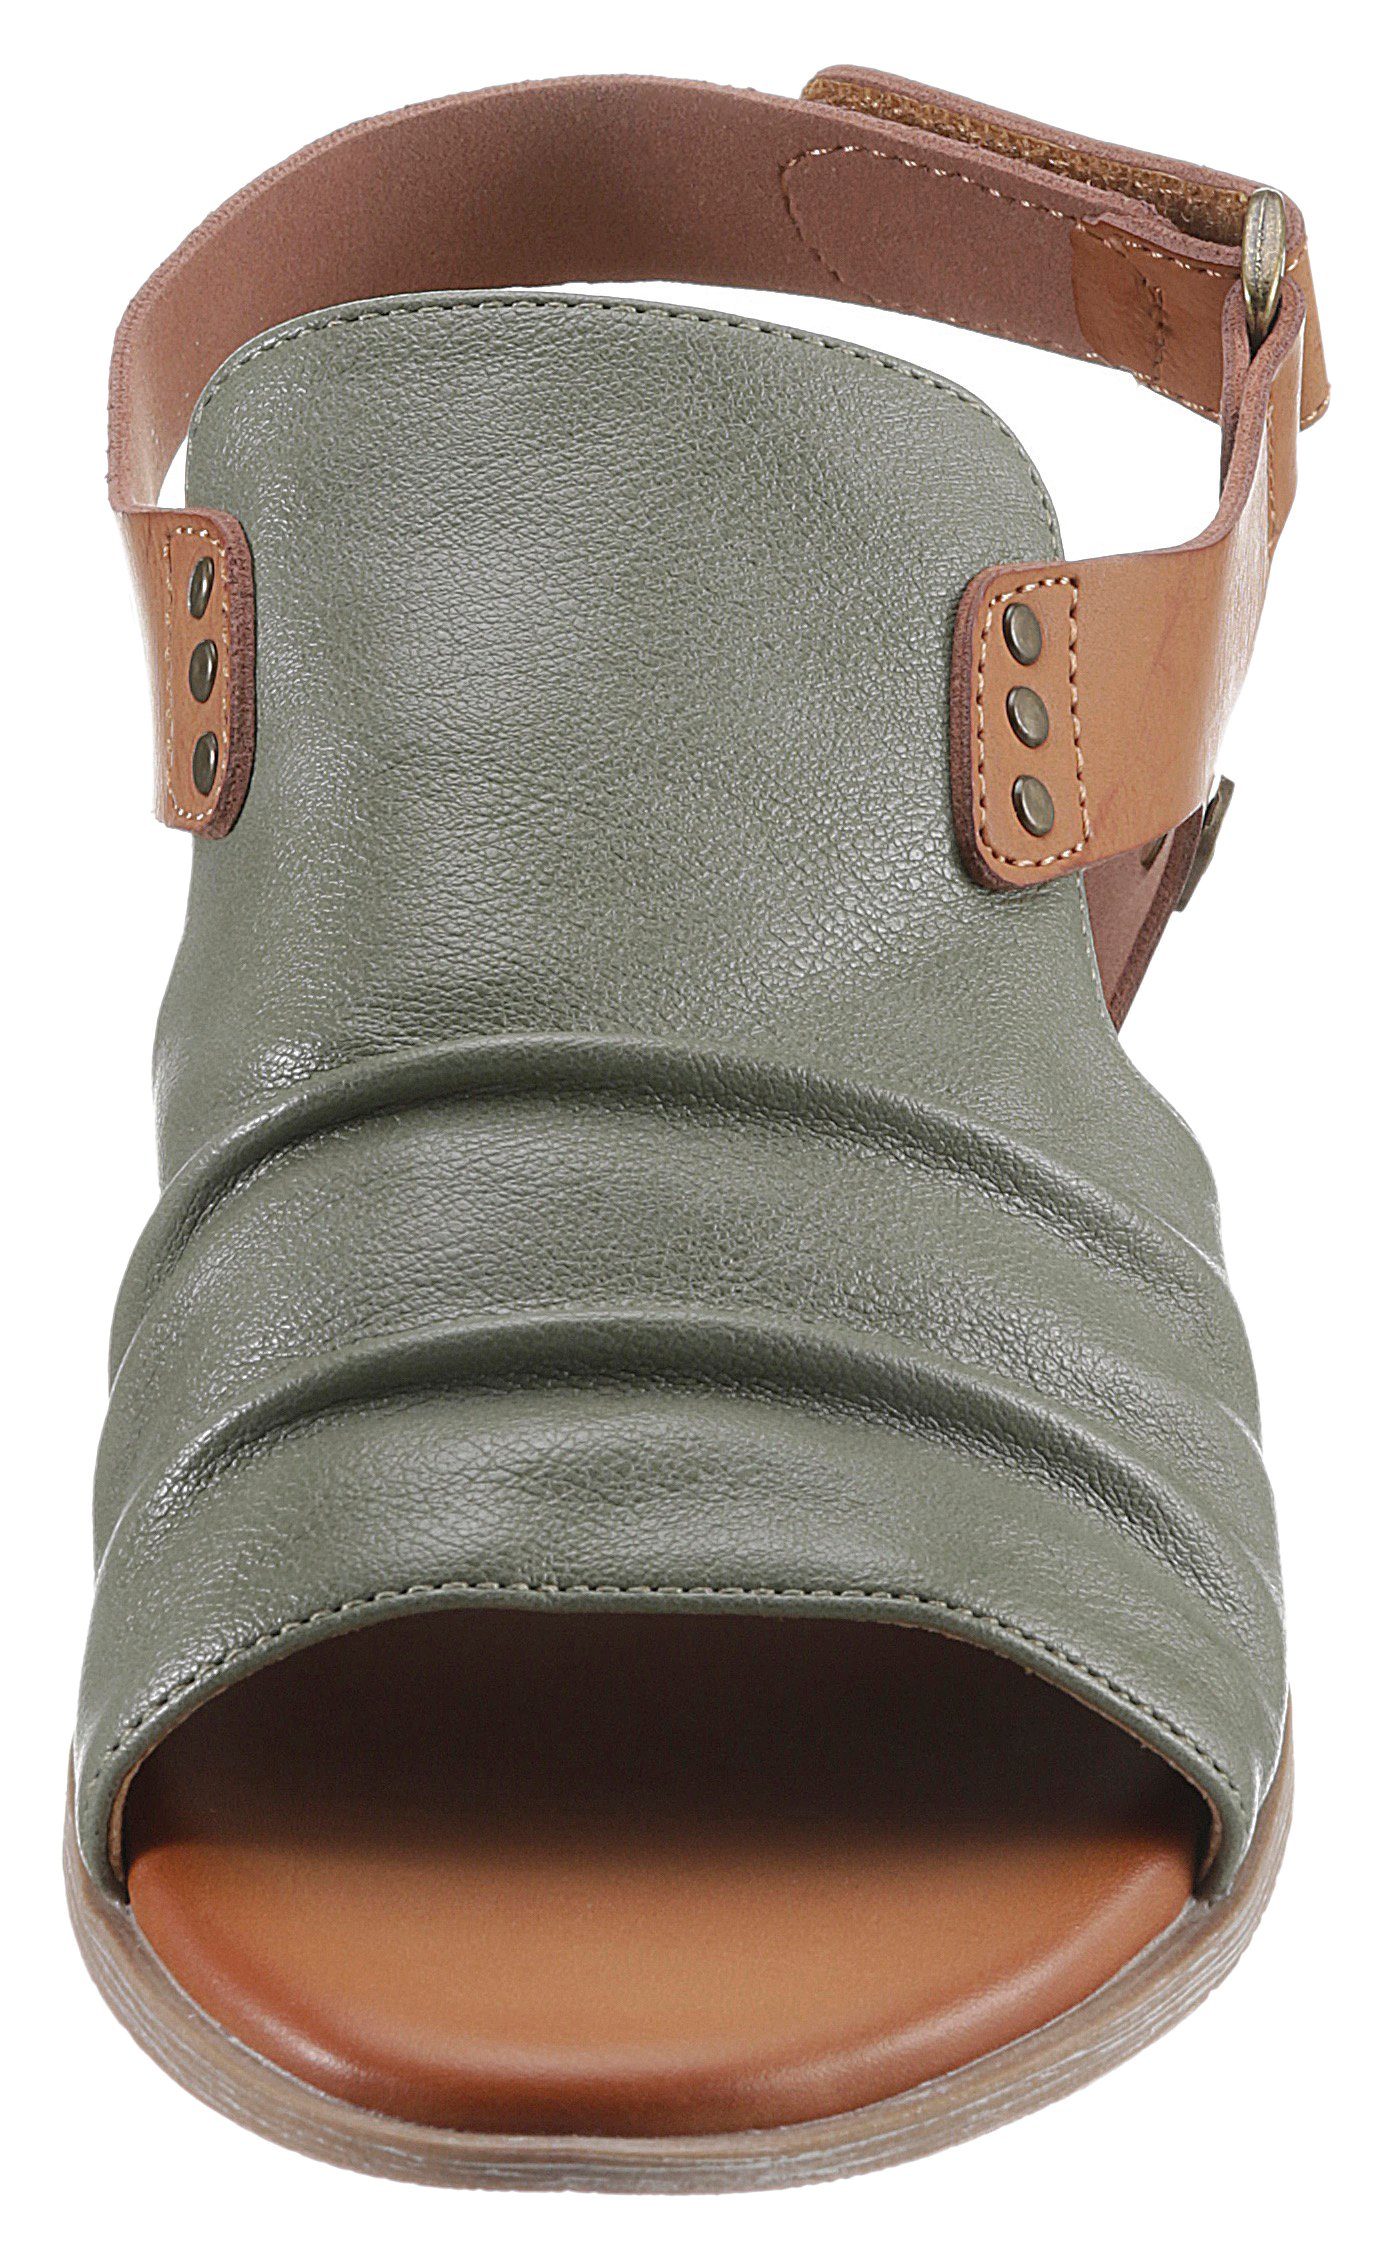 Fersenbereich Mustang Shoes mit Klettverschluss im olivgrün-braun Riemchensandale